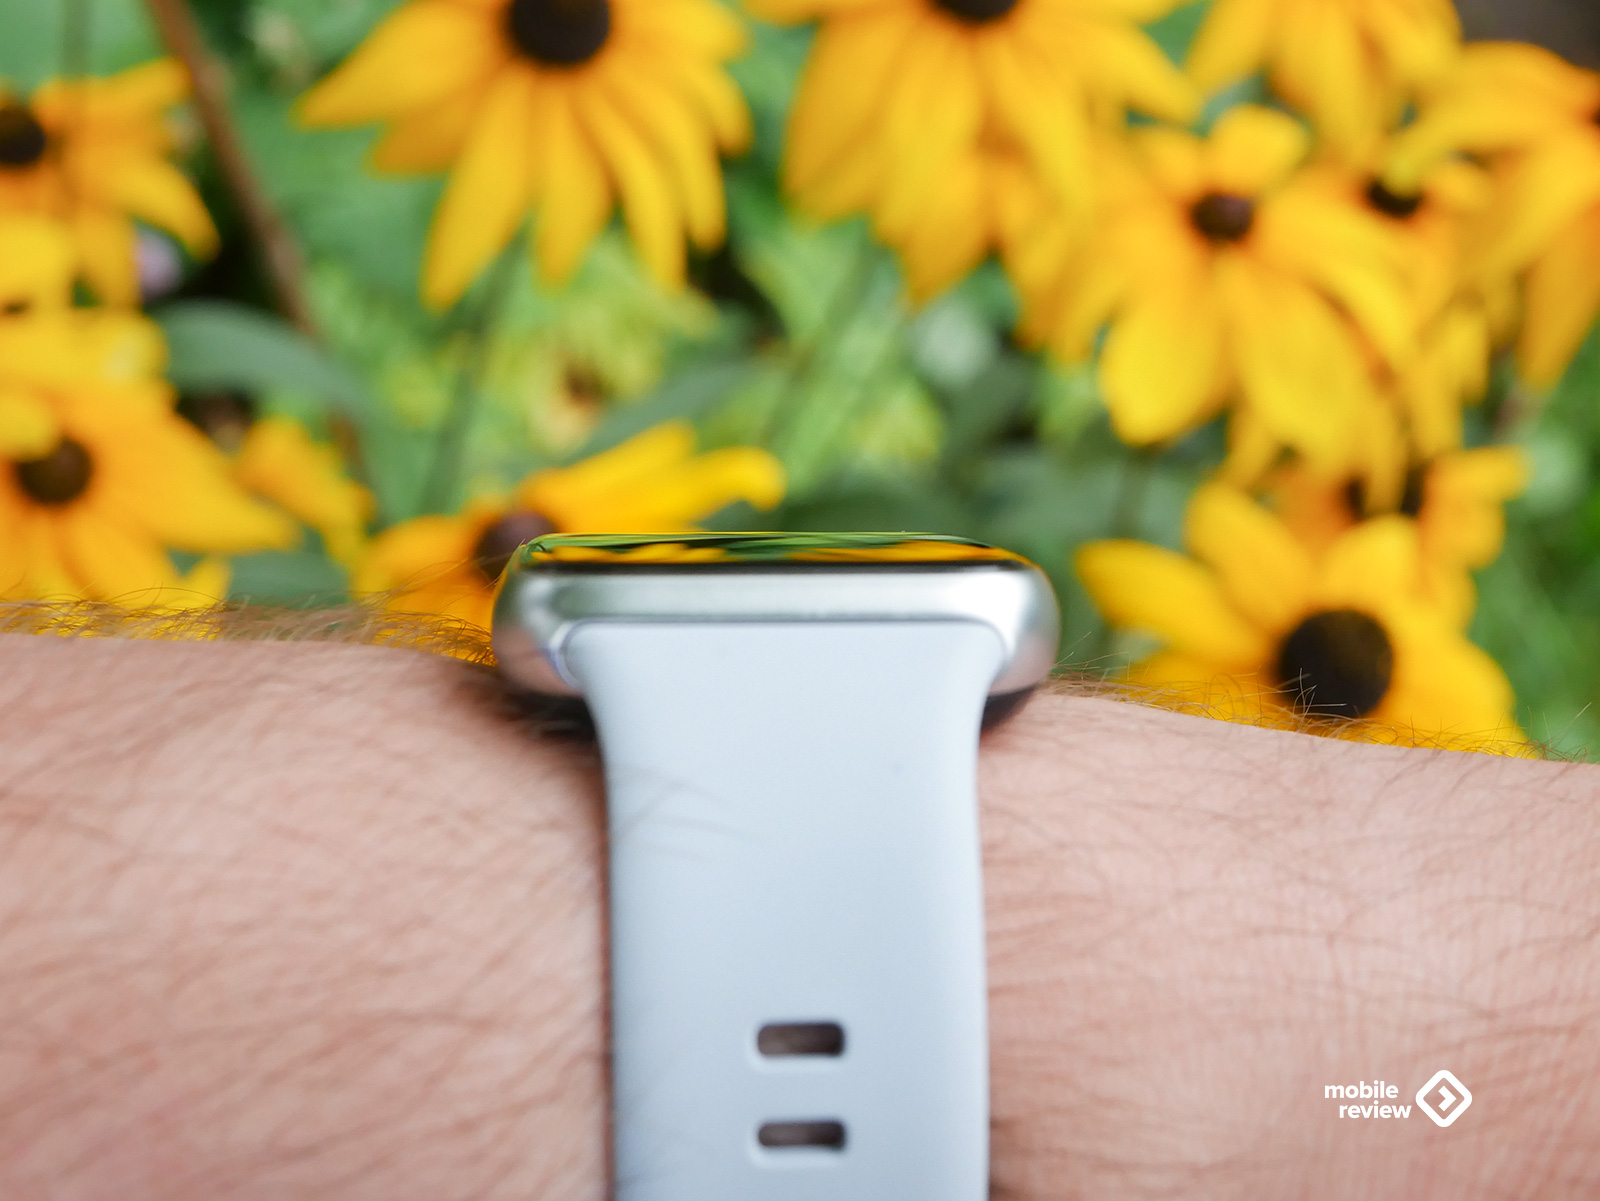 Полноценные подключаемые часы в формате фитнес-браслета? 7 причин выбрать Huawei Watch Fit 2